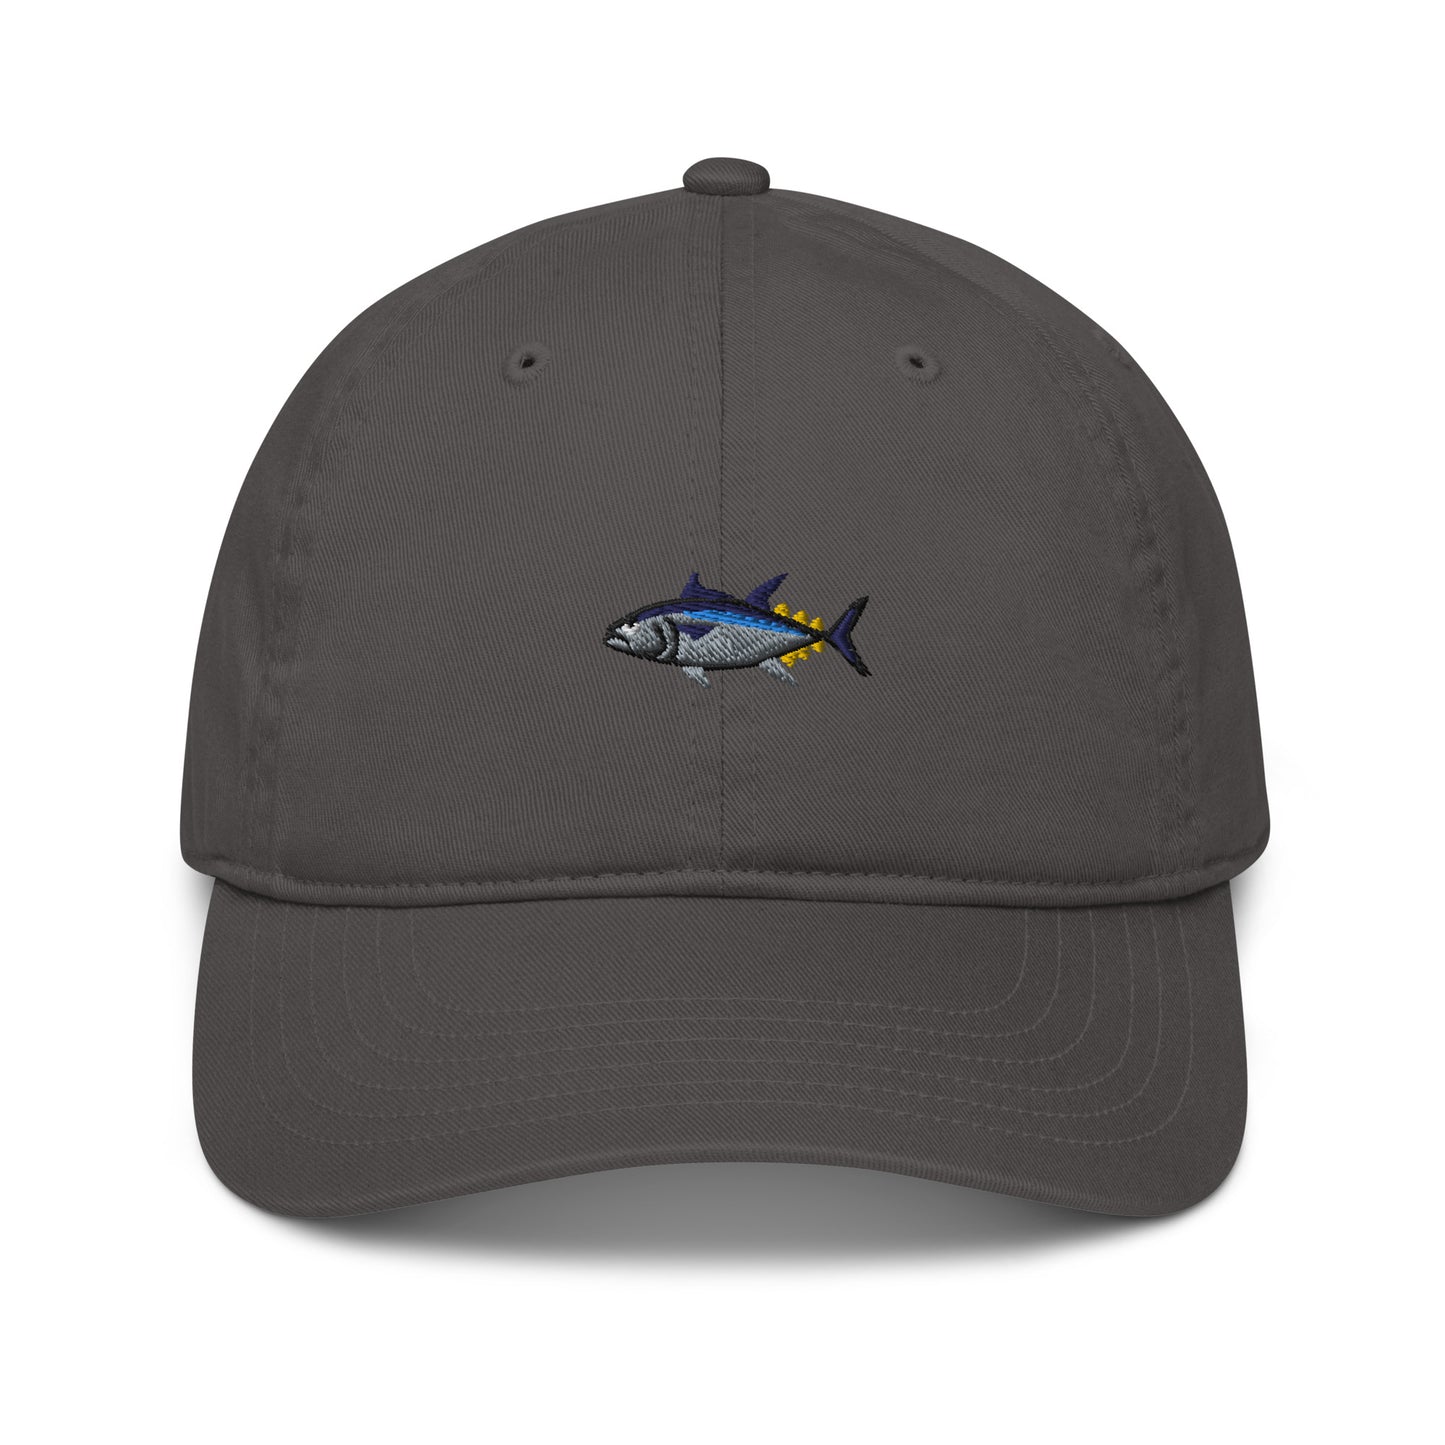 Bluefin Tuna Classic Hat